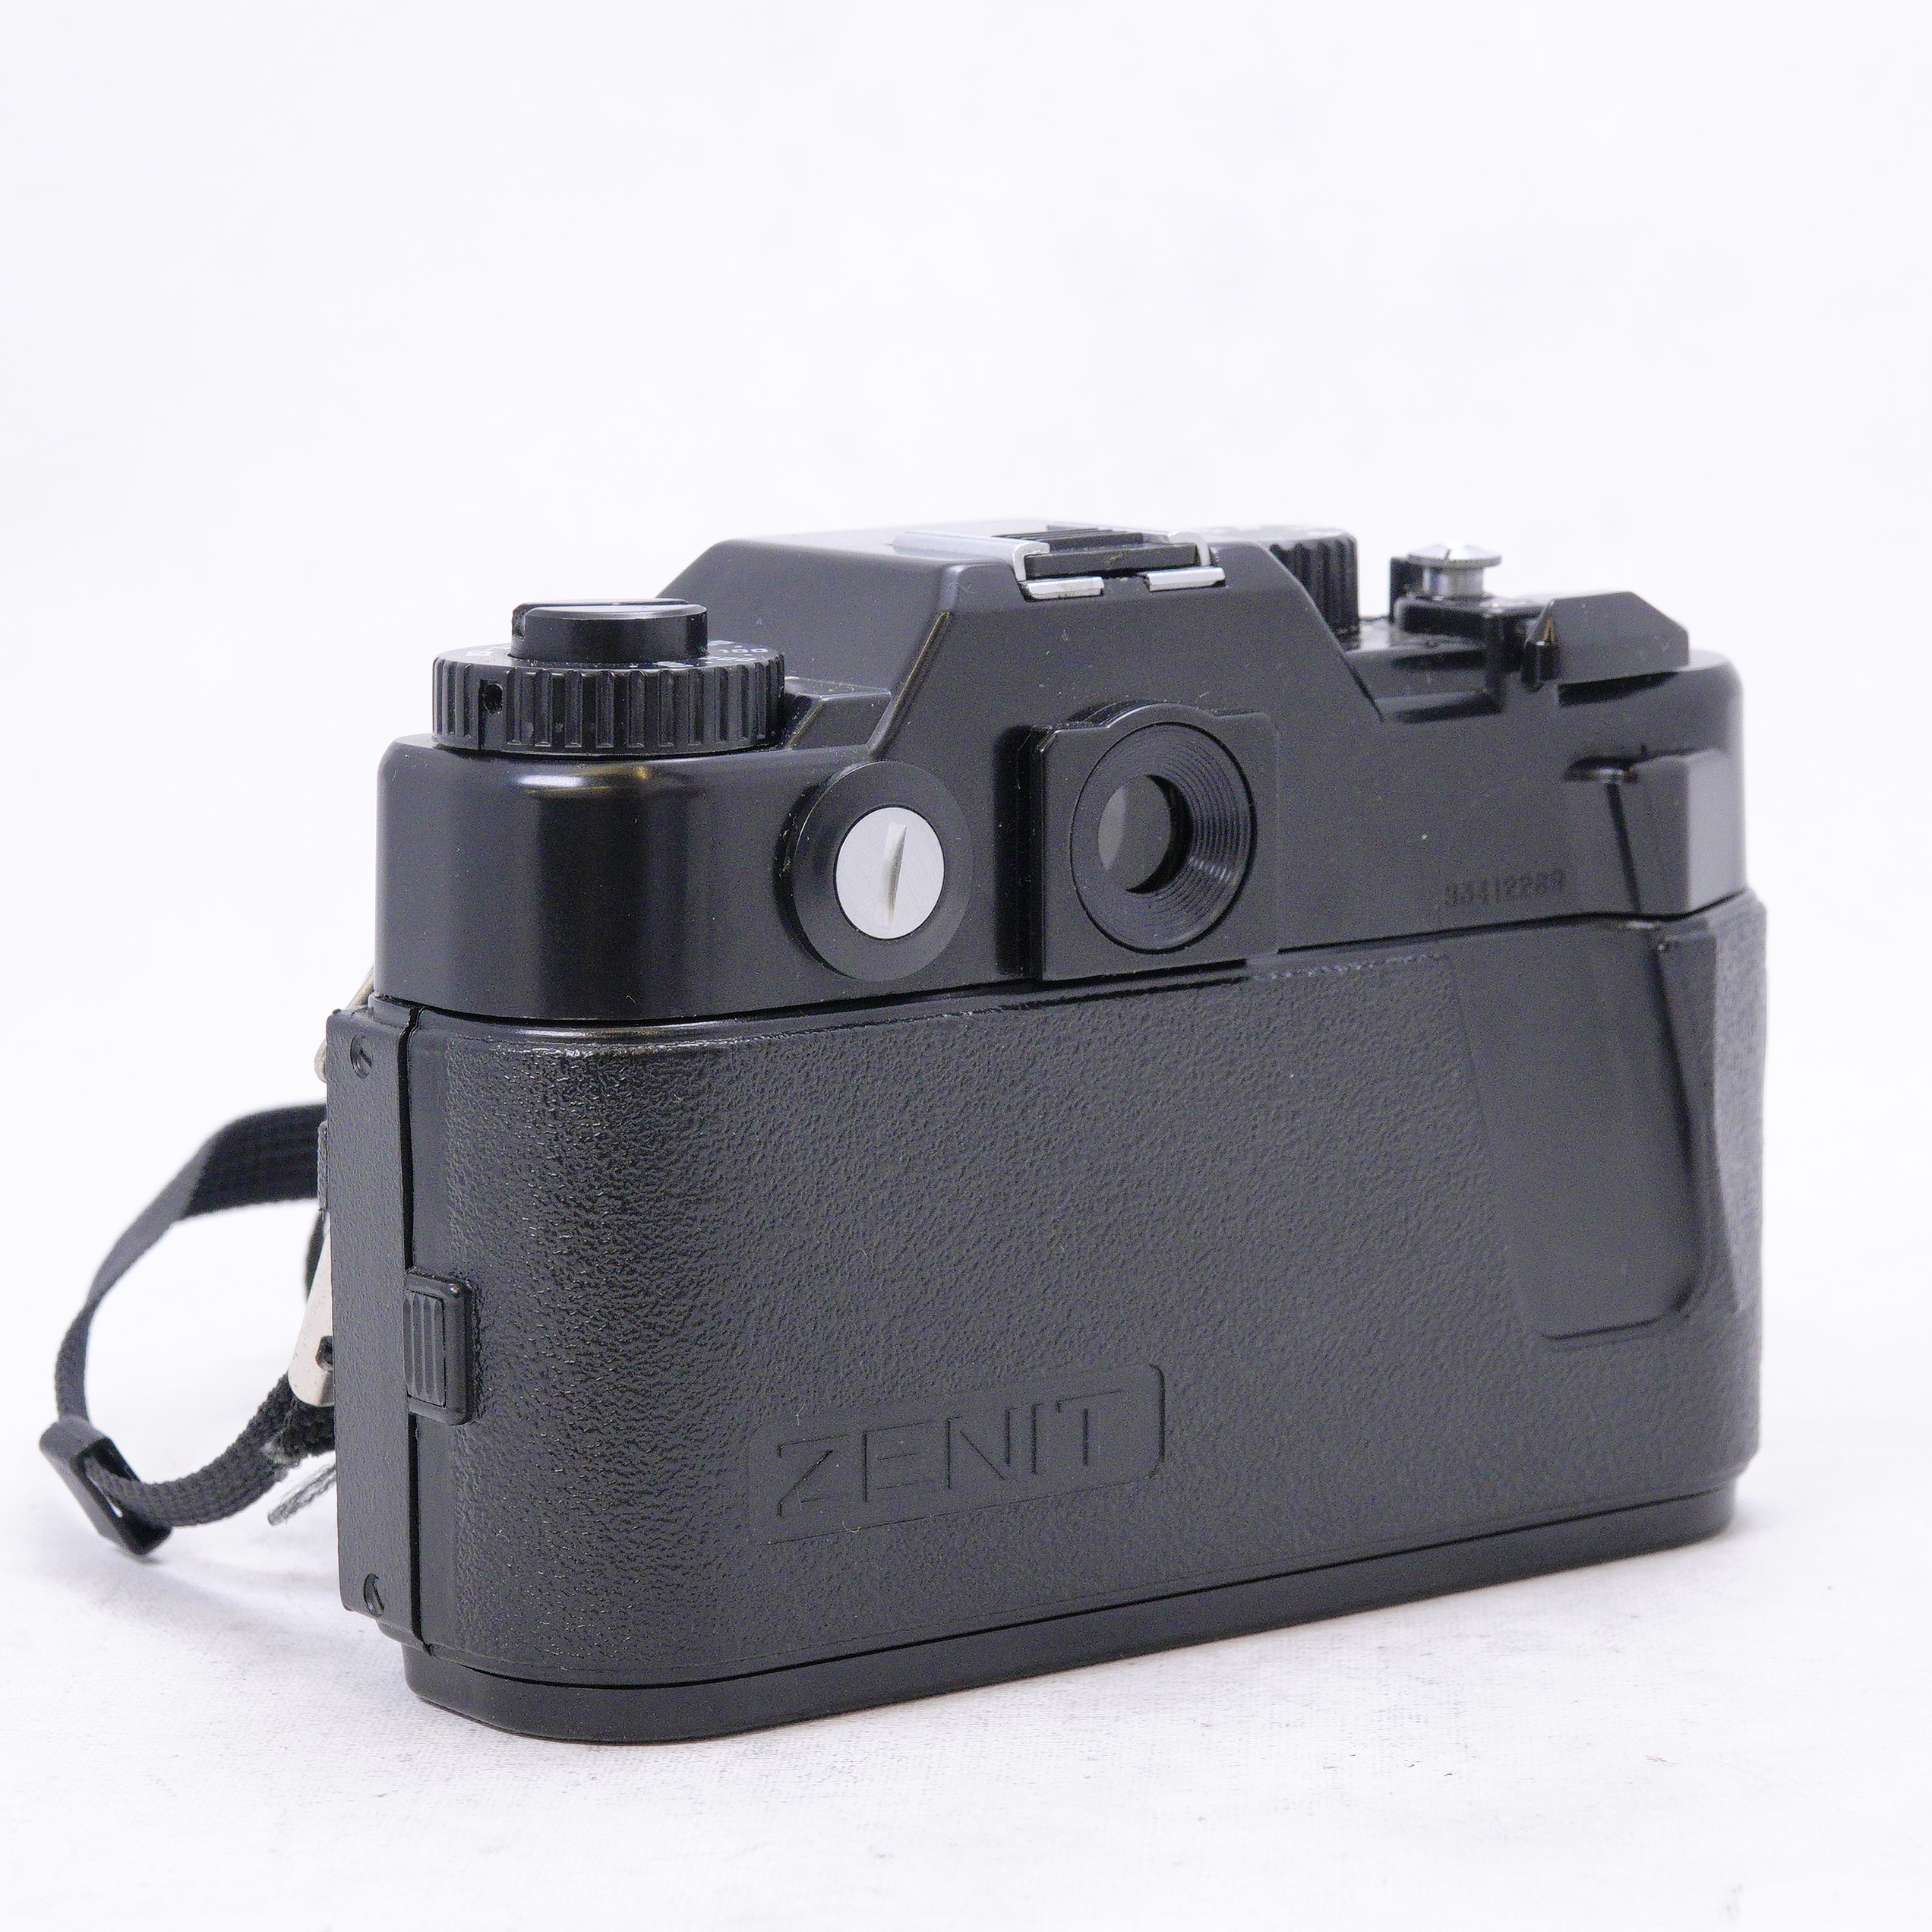 Zenit 122 con lente 58mm f2 y flash Vivitar - Usado